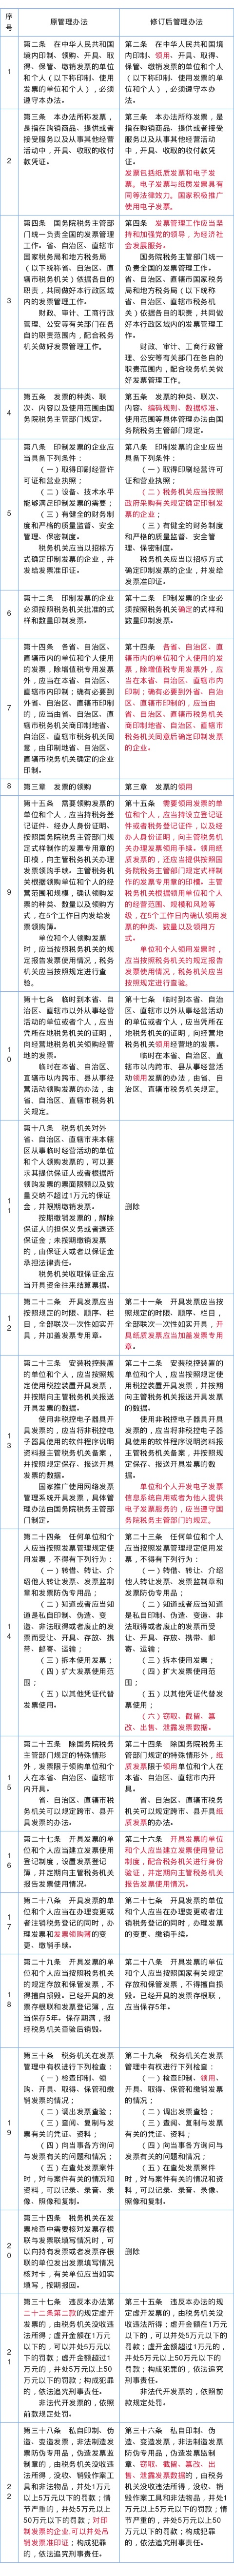 《中华人民共和国发票管理办法》修改对比表